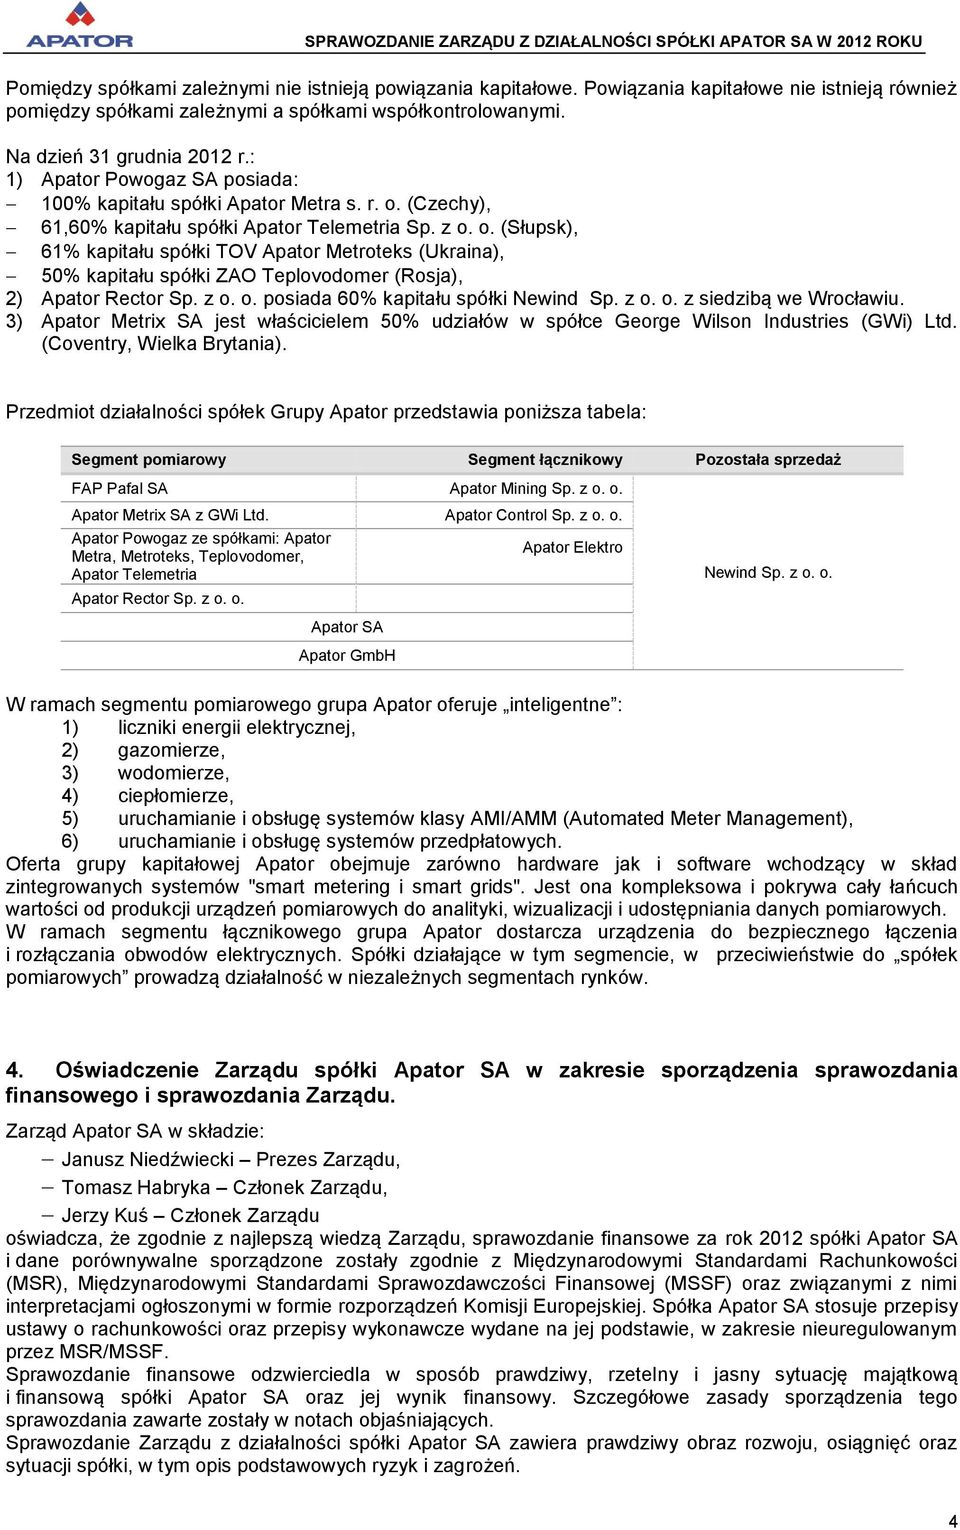 (Czechy), 61,60% kapitału spółki Apator Telemetria Sp. z o. o. (Słupsk), 61% kapitału spółki TOV Apator Metroteks (Ukraina), 50% kapitału spółki ZAO Teplovodomer (Rosja), 2) Apator Rector Sp. z o. o. posiada 60% kapitału spółki Newind Sp.